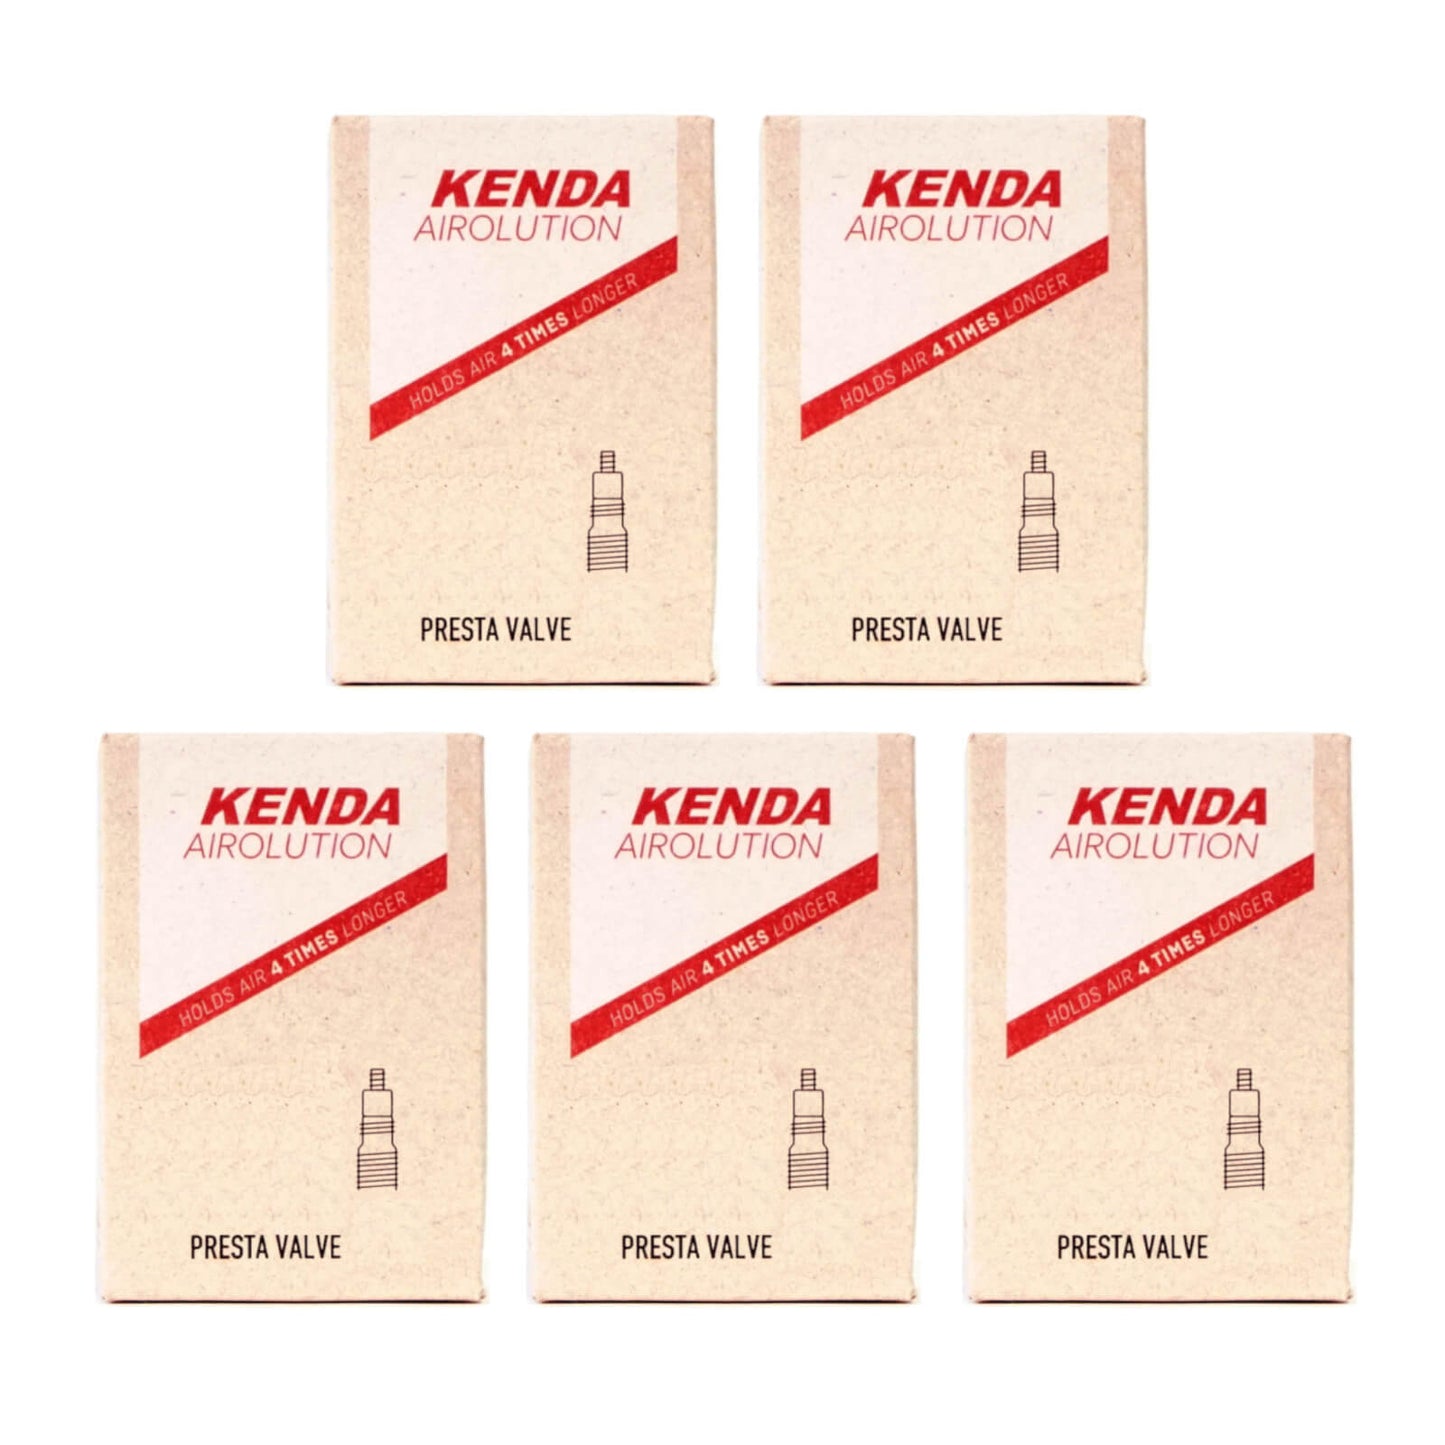 Kenda Airolution 27.5x2.4-2.8" 27.5 Inch Presta Valve Bike Inner Tube Pack of 5